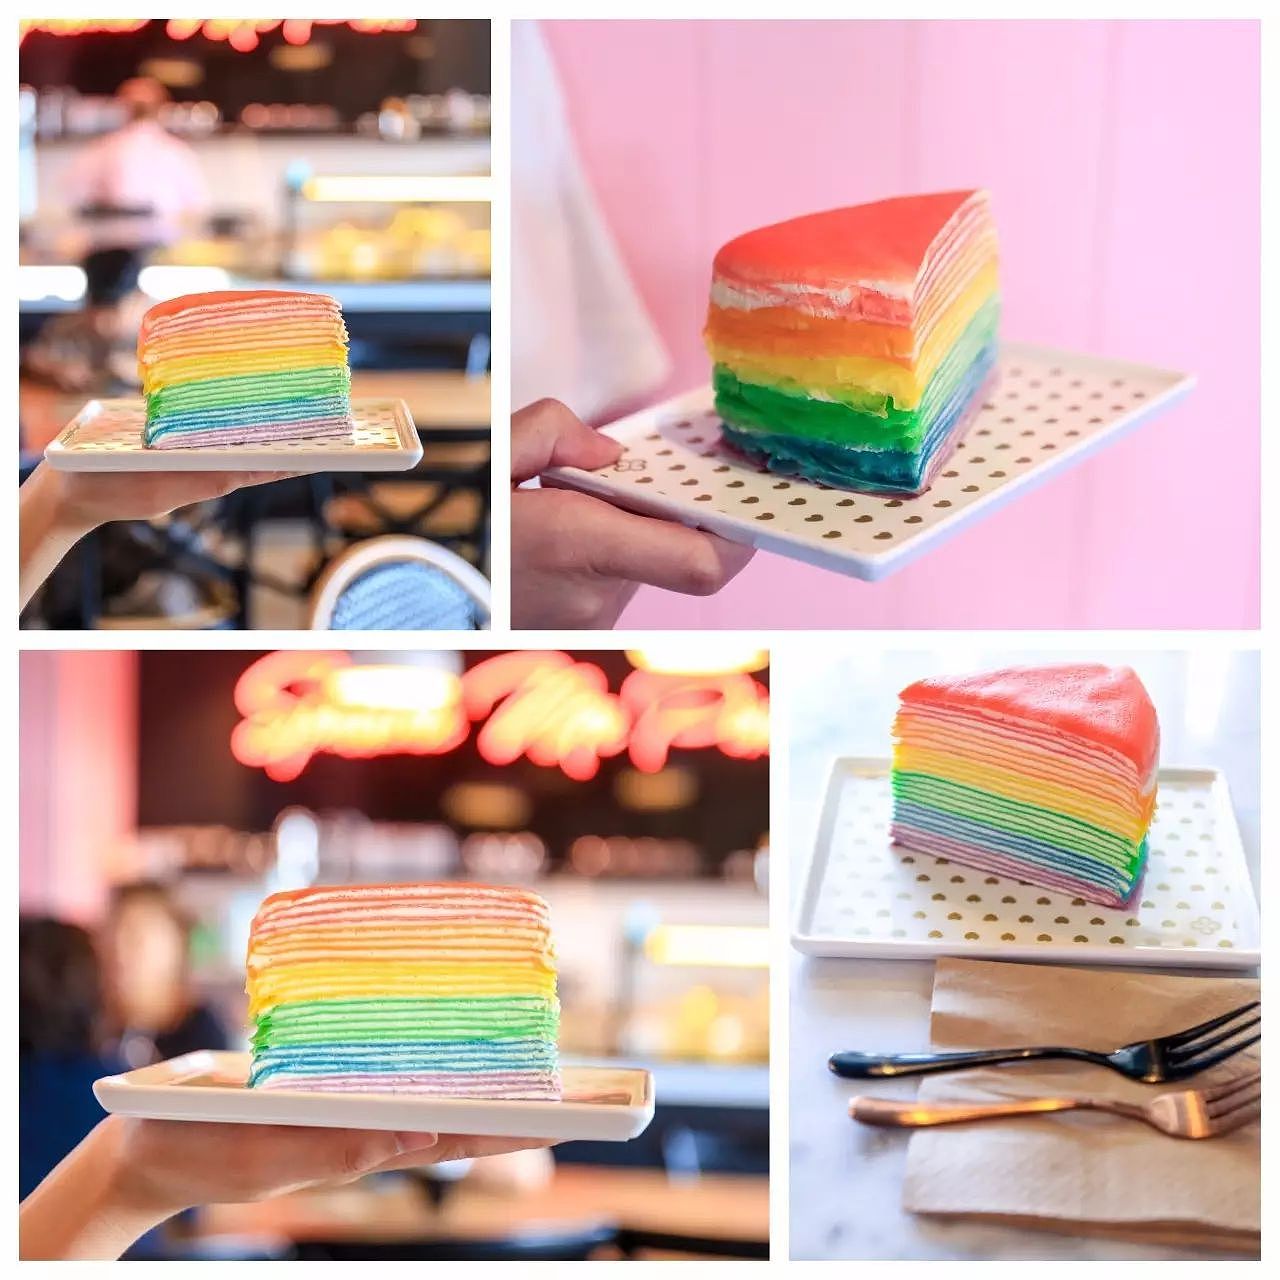 彩虹千层蛋糕 || Strathfield新开的Cafe@JO&CO卖的甜品真是给点颜色就灿烂～ - 16